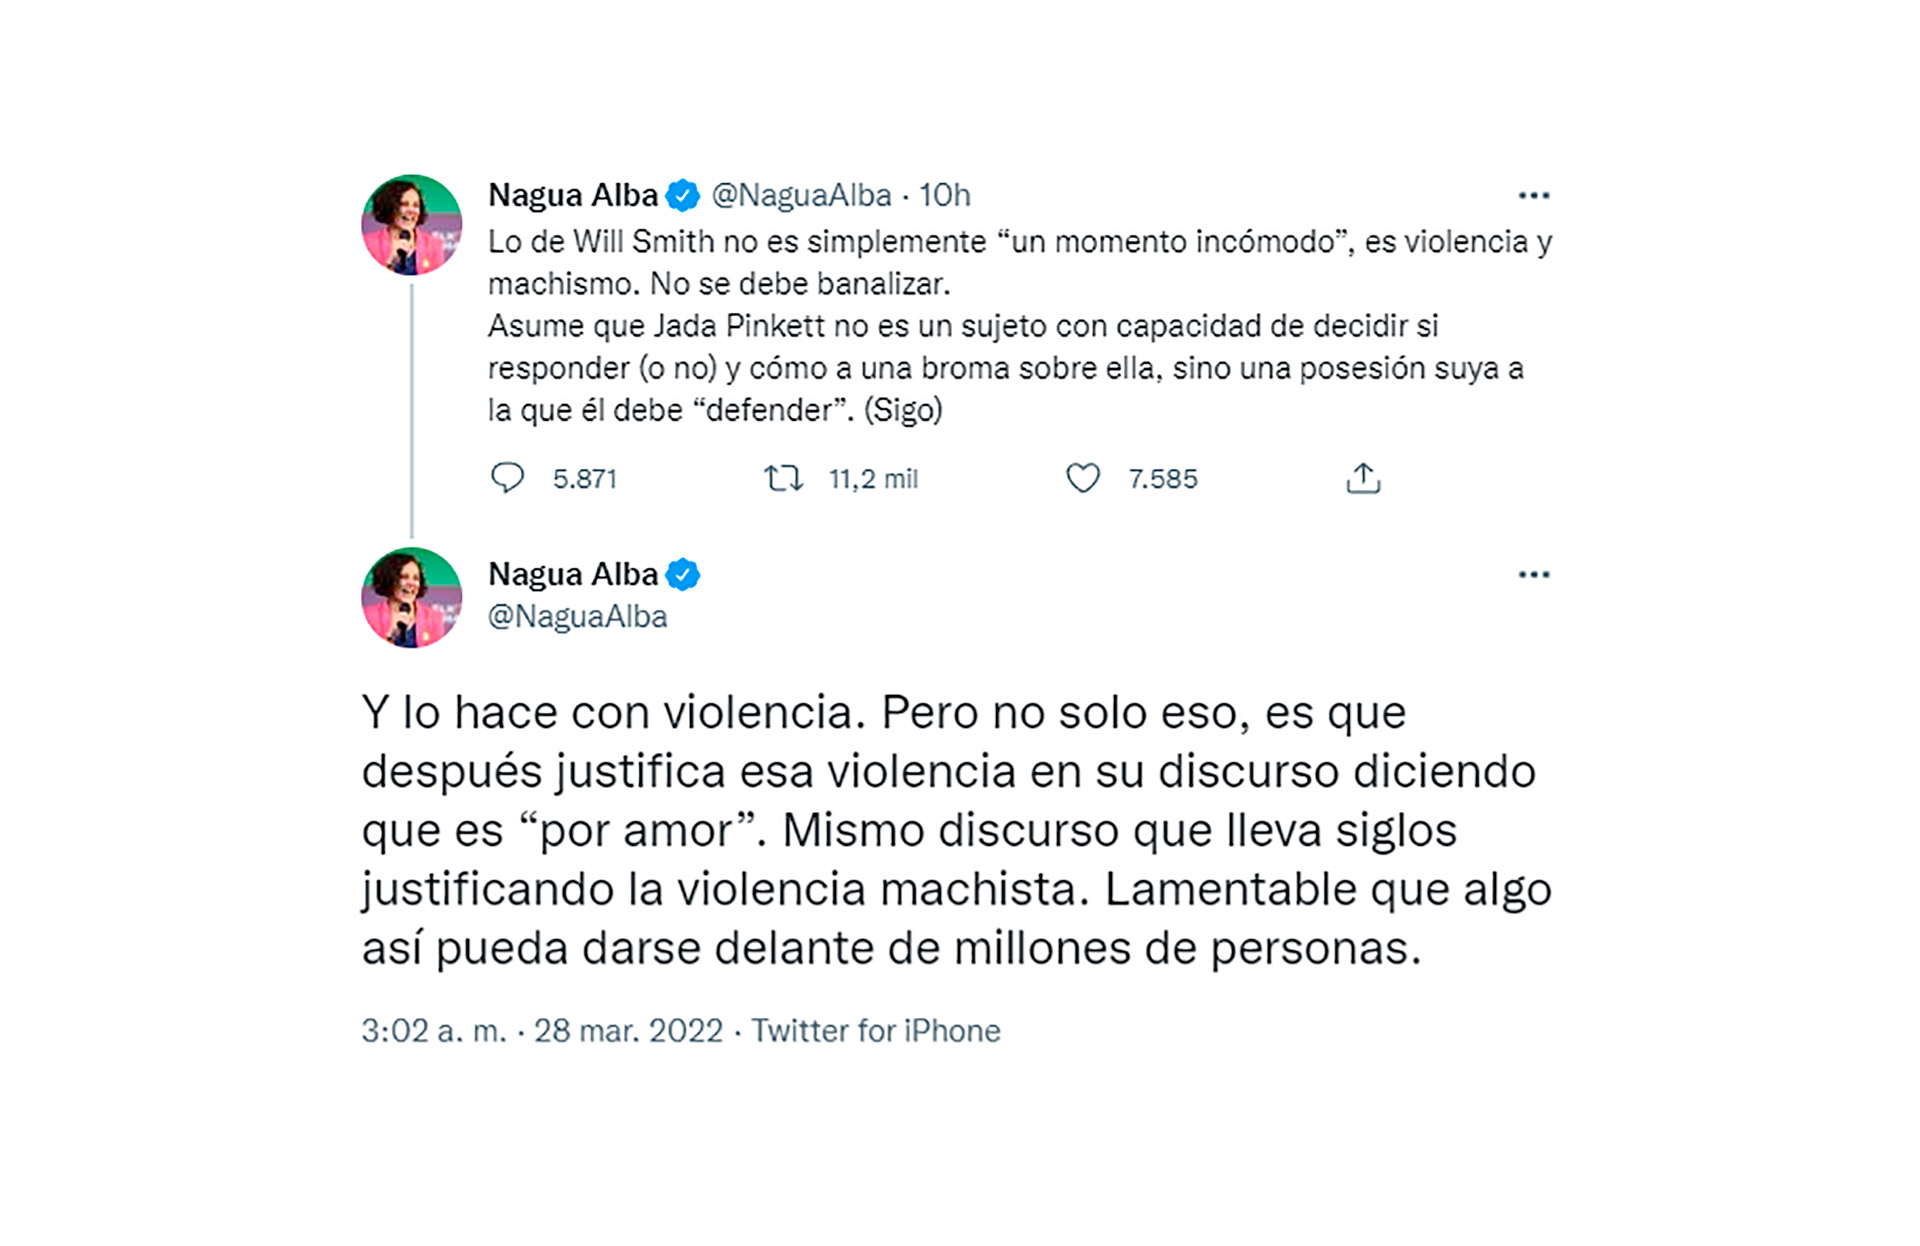 La psicóloga feminista española Nayua Miriam Goveli Alba, más conocida como Nagua Alba, escribió en su cuenta de Twitter: “Lo de Will Smith no es simplemente ‘un momento incómodo’, es violencia y machismo"